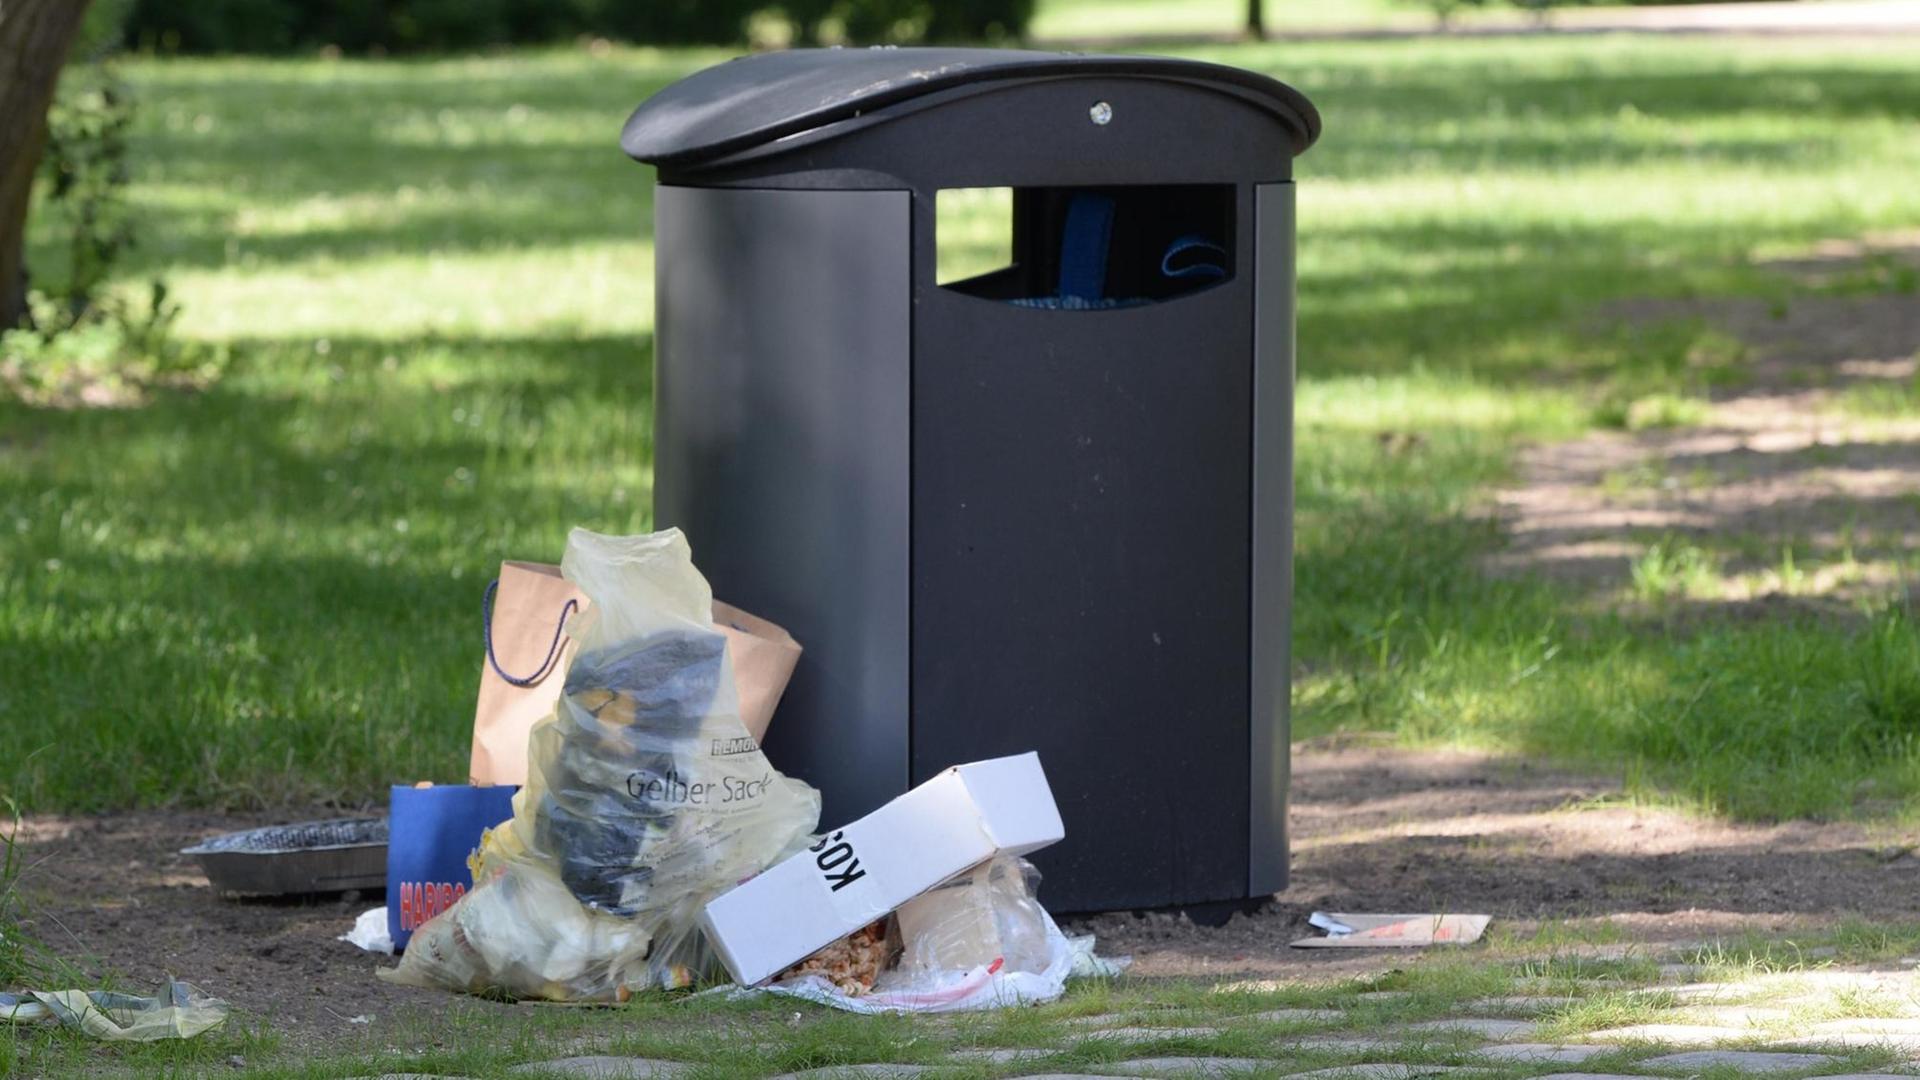 Abfall im öffentlichen Raum - Vermüllung aus Bequemlichkeit